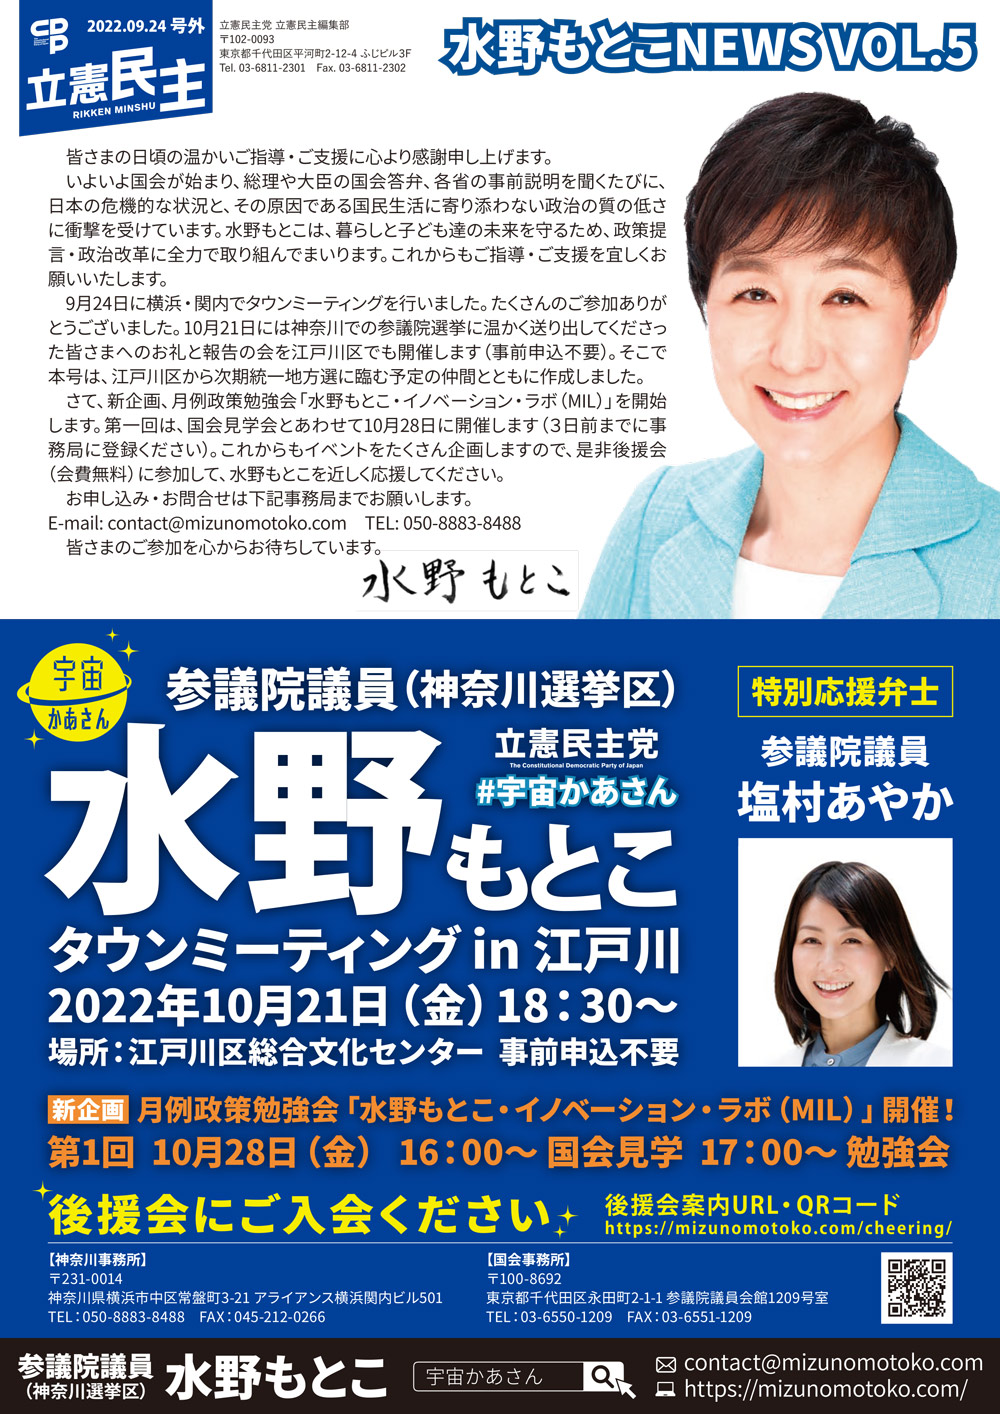 2022年10月21日(金) 水野もとこタウンミーティング in 江戸川